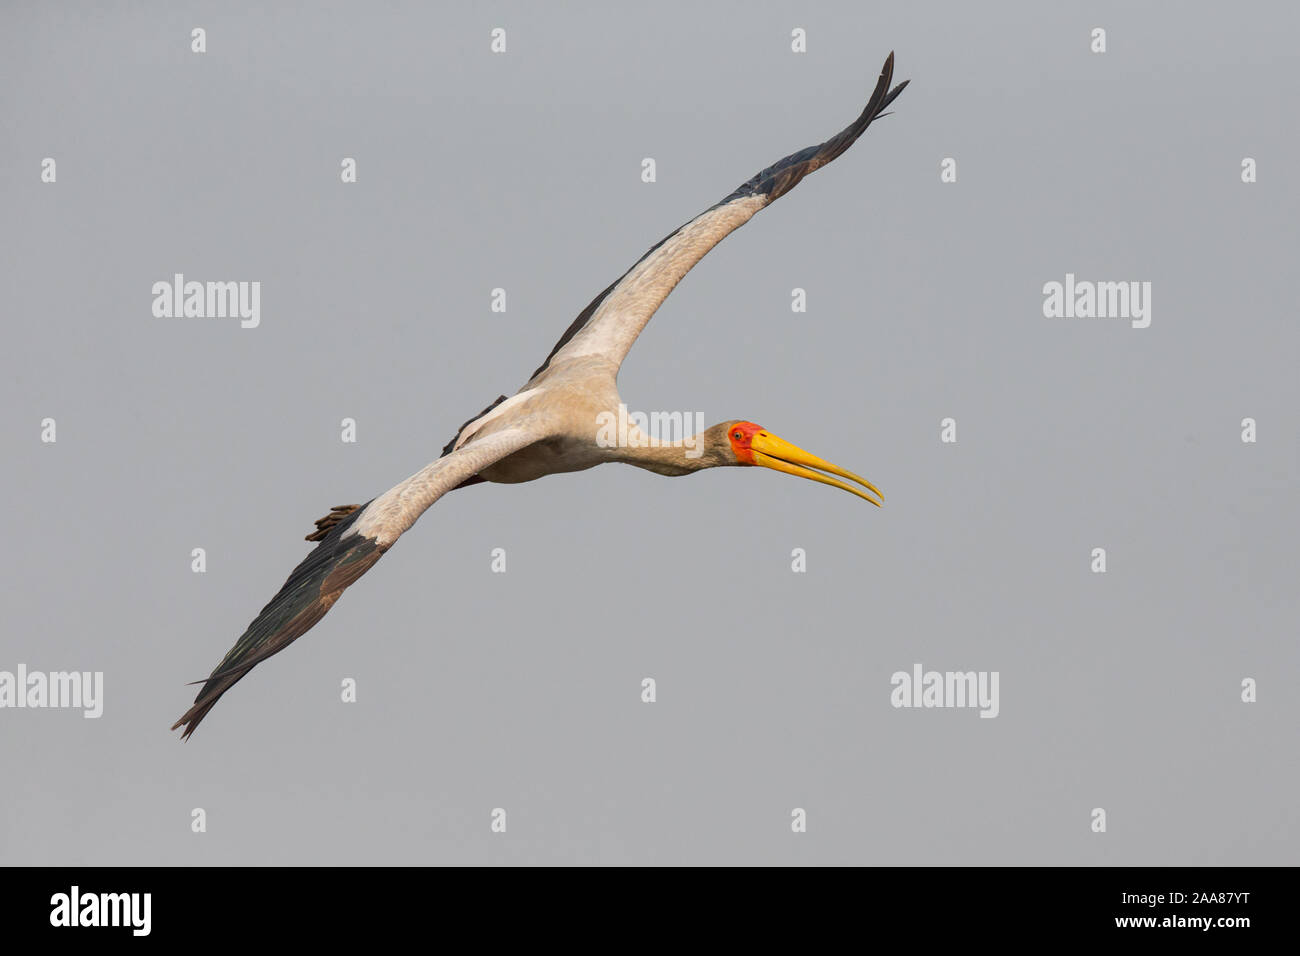 Yellow-billed Stork (Mycteria ibis) flying, Chobe National Park, Botswana. Stock Photo